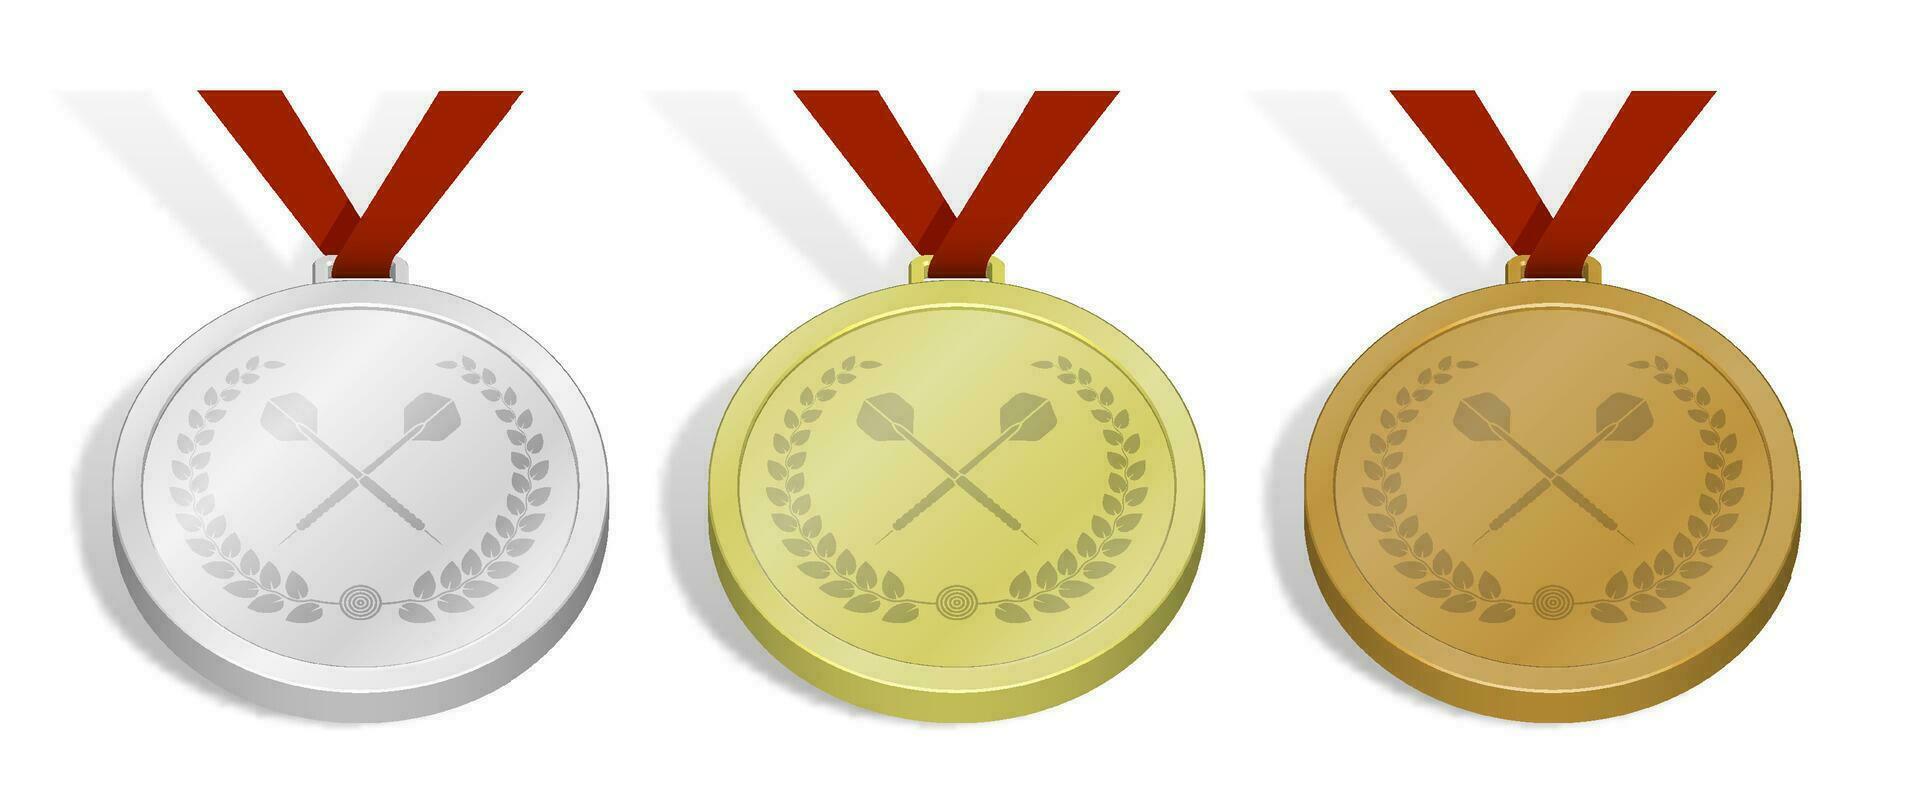 einstellen von Sport Medaillen mit Emblem von gekreuzt Sport Pfeil Pfeil mit Lorbeer Kranz zum Darts Wettbewerb. Gold, Silber und Bronze- vergeben mit Blau Schleife. 3d Vektor